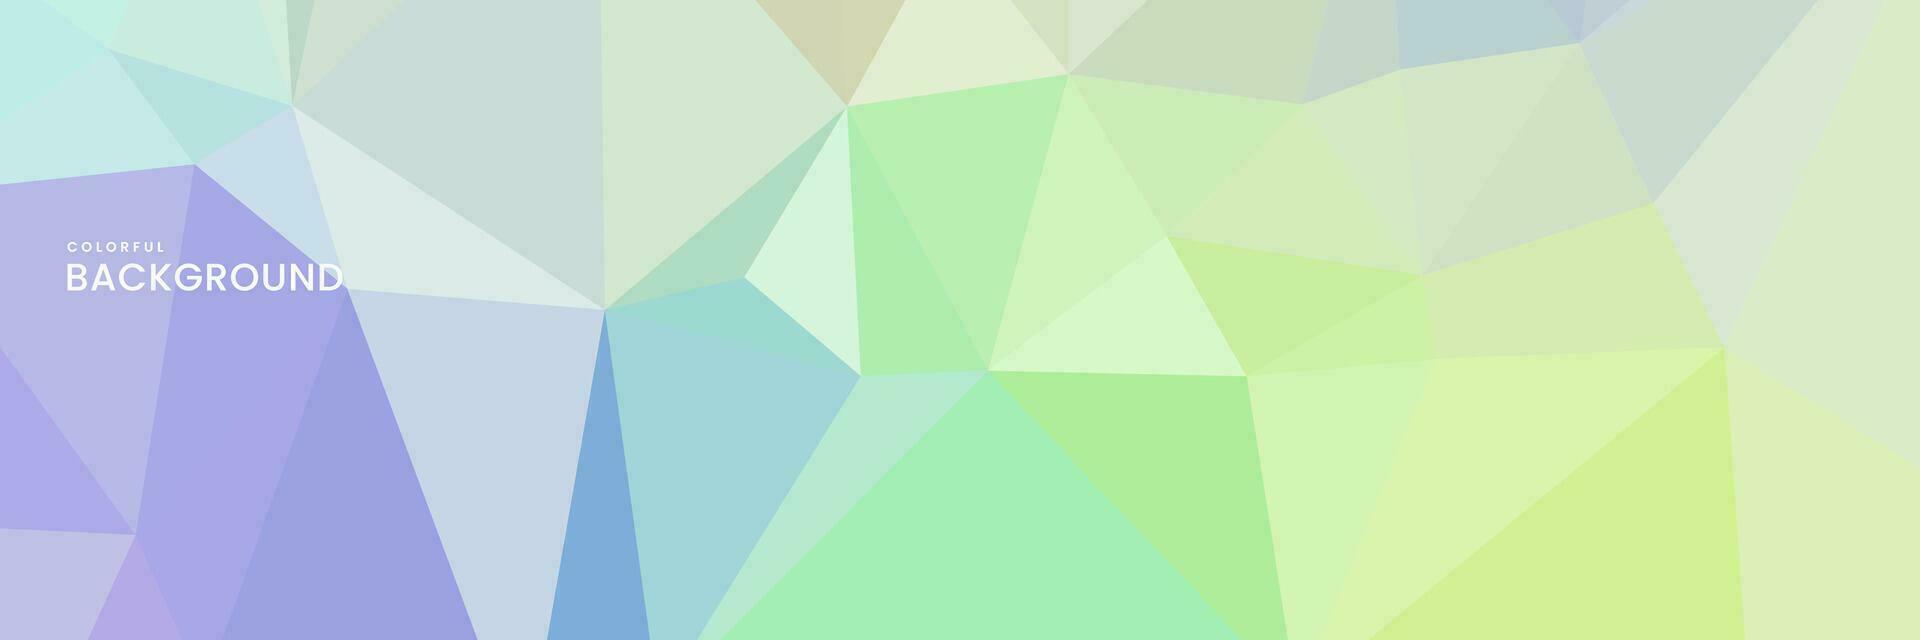 abstrakt kreativ geometrisk konst färgrik bakgrund med trianglar vektor